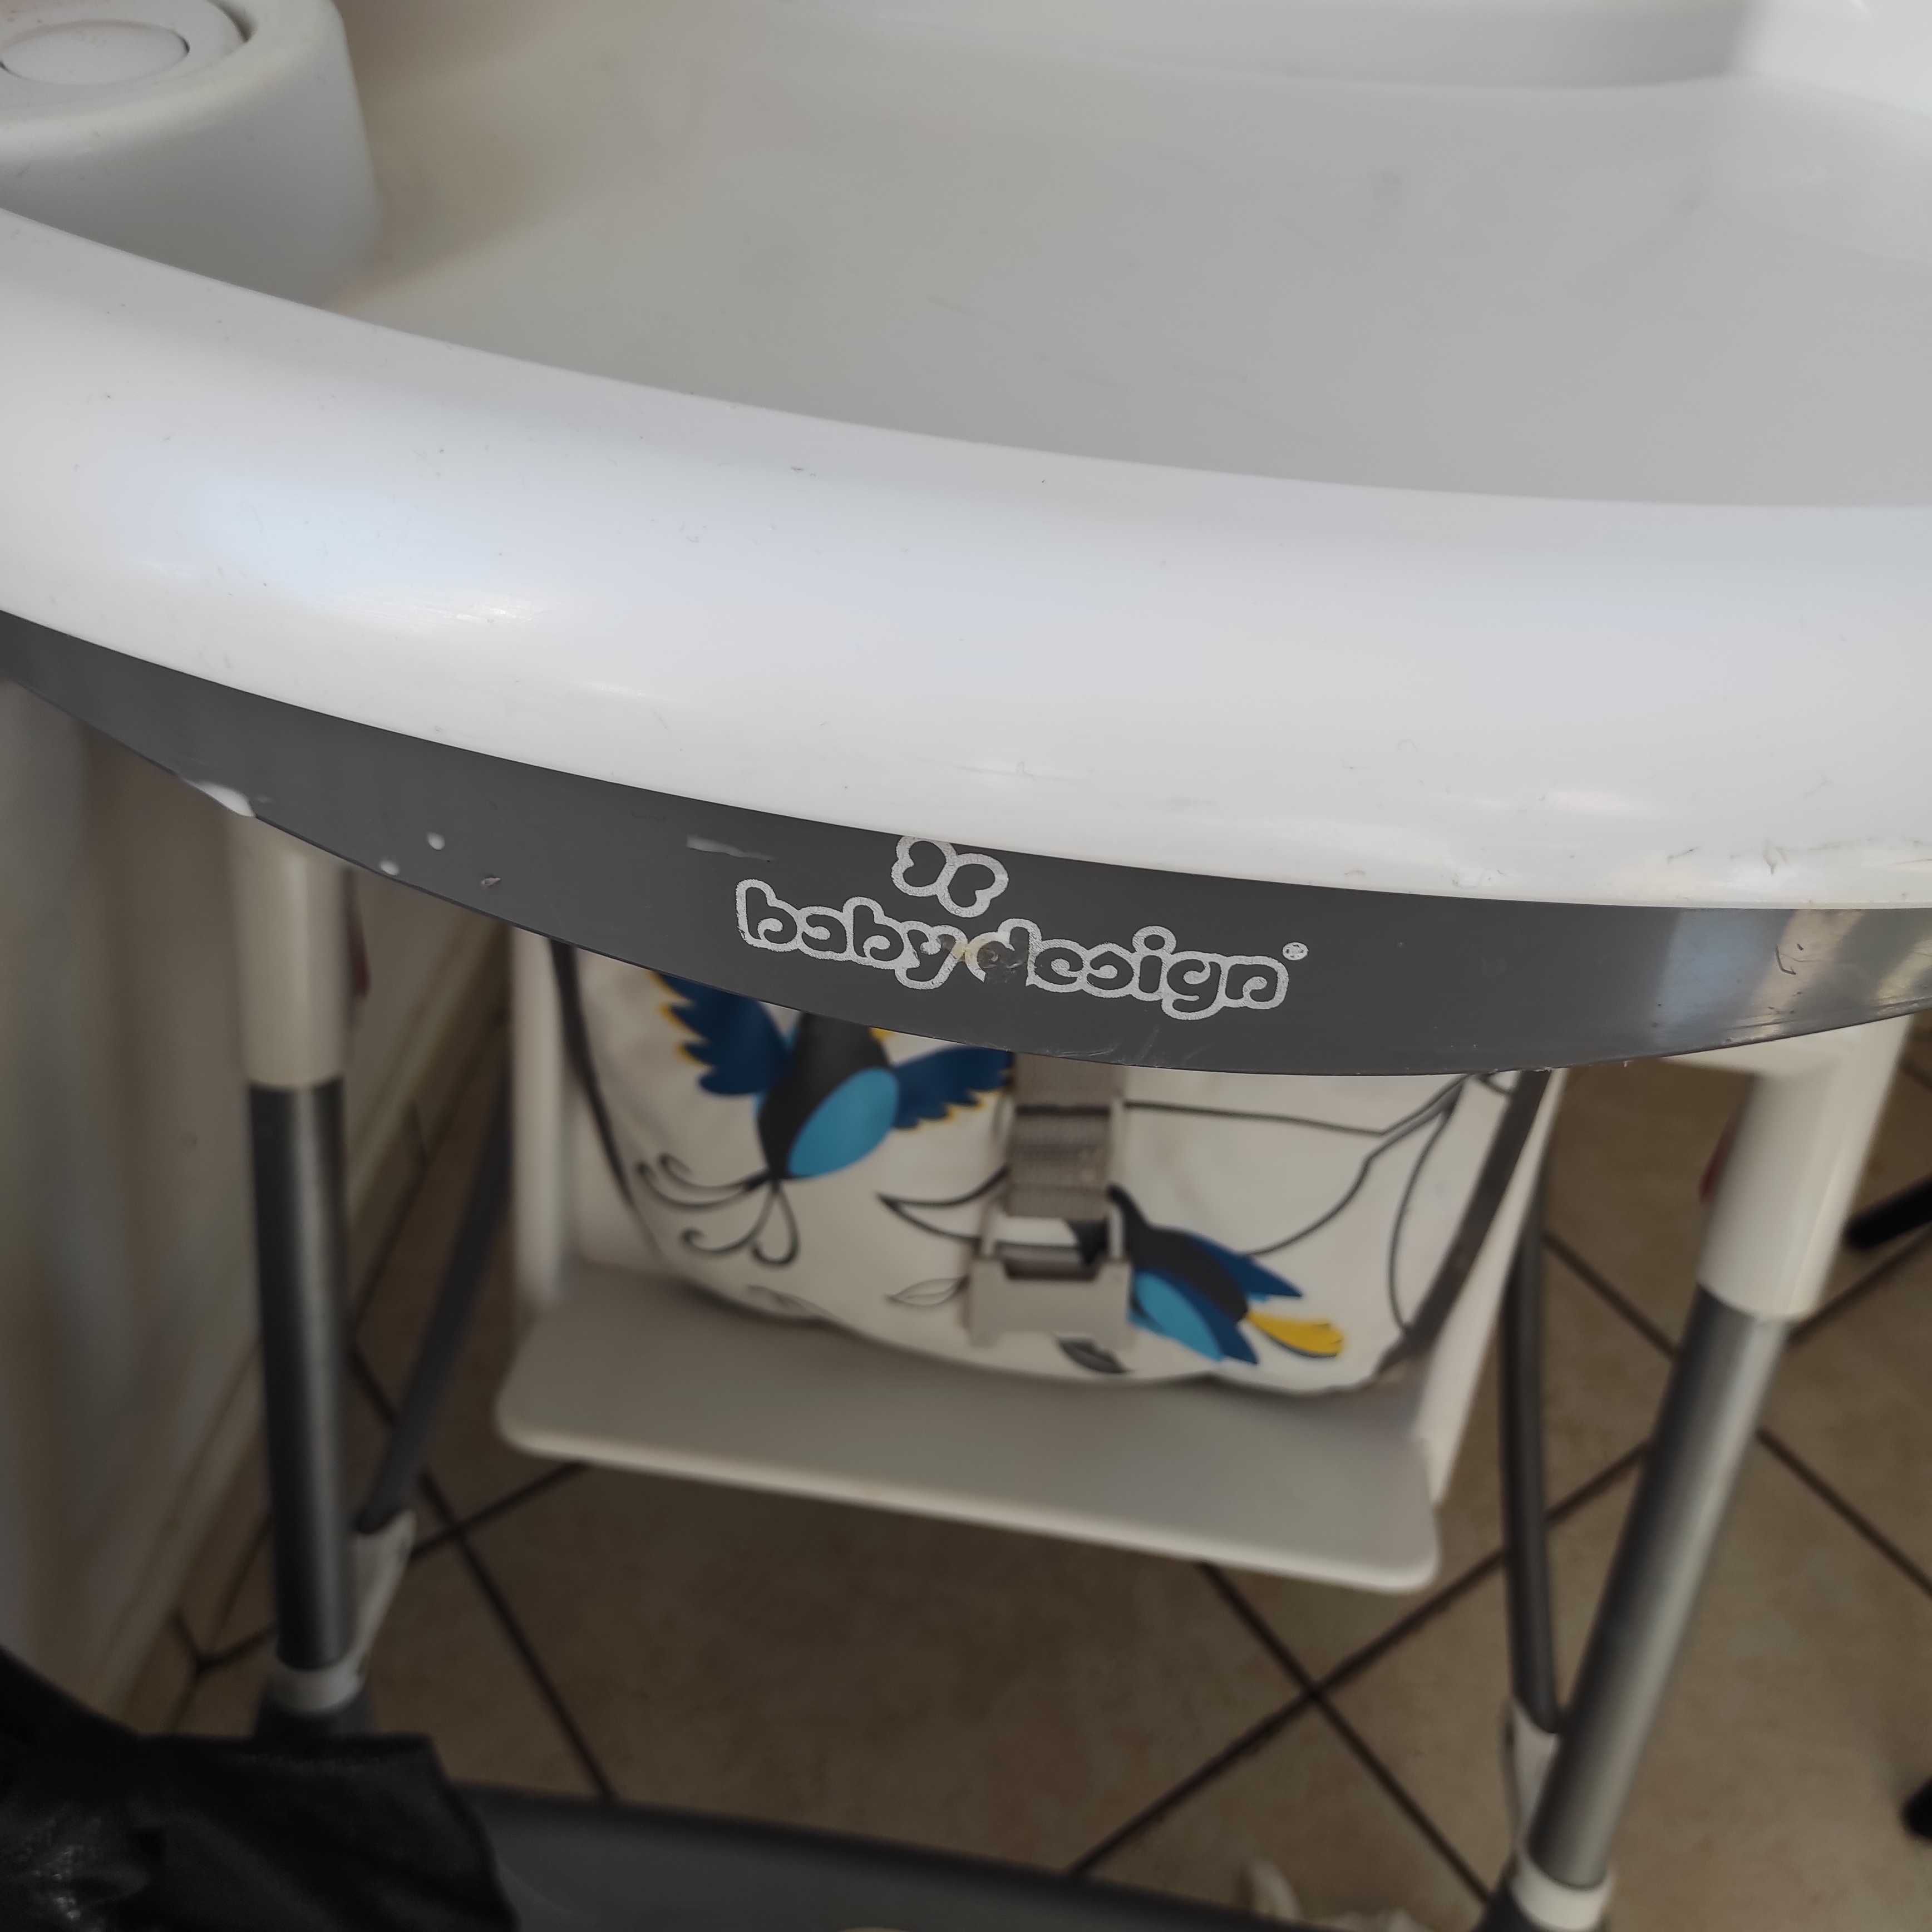 Krzesełko do karmienia baby design